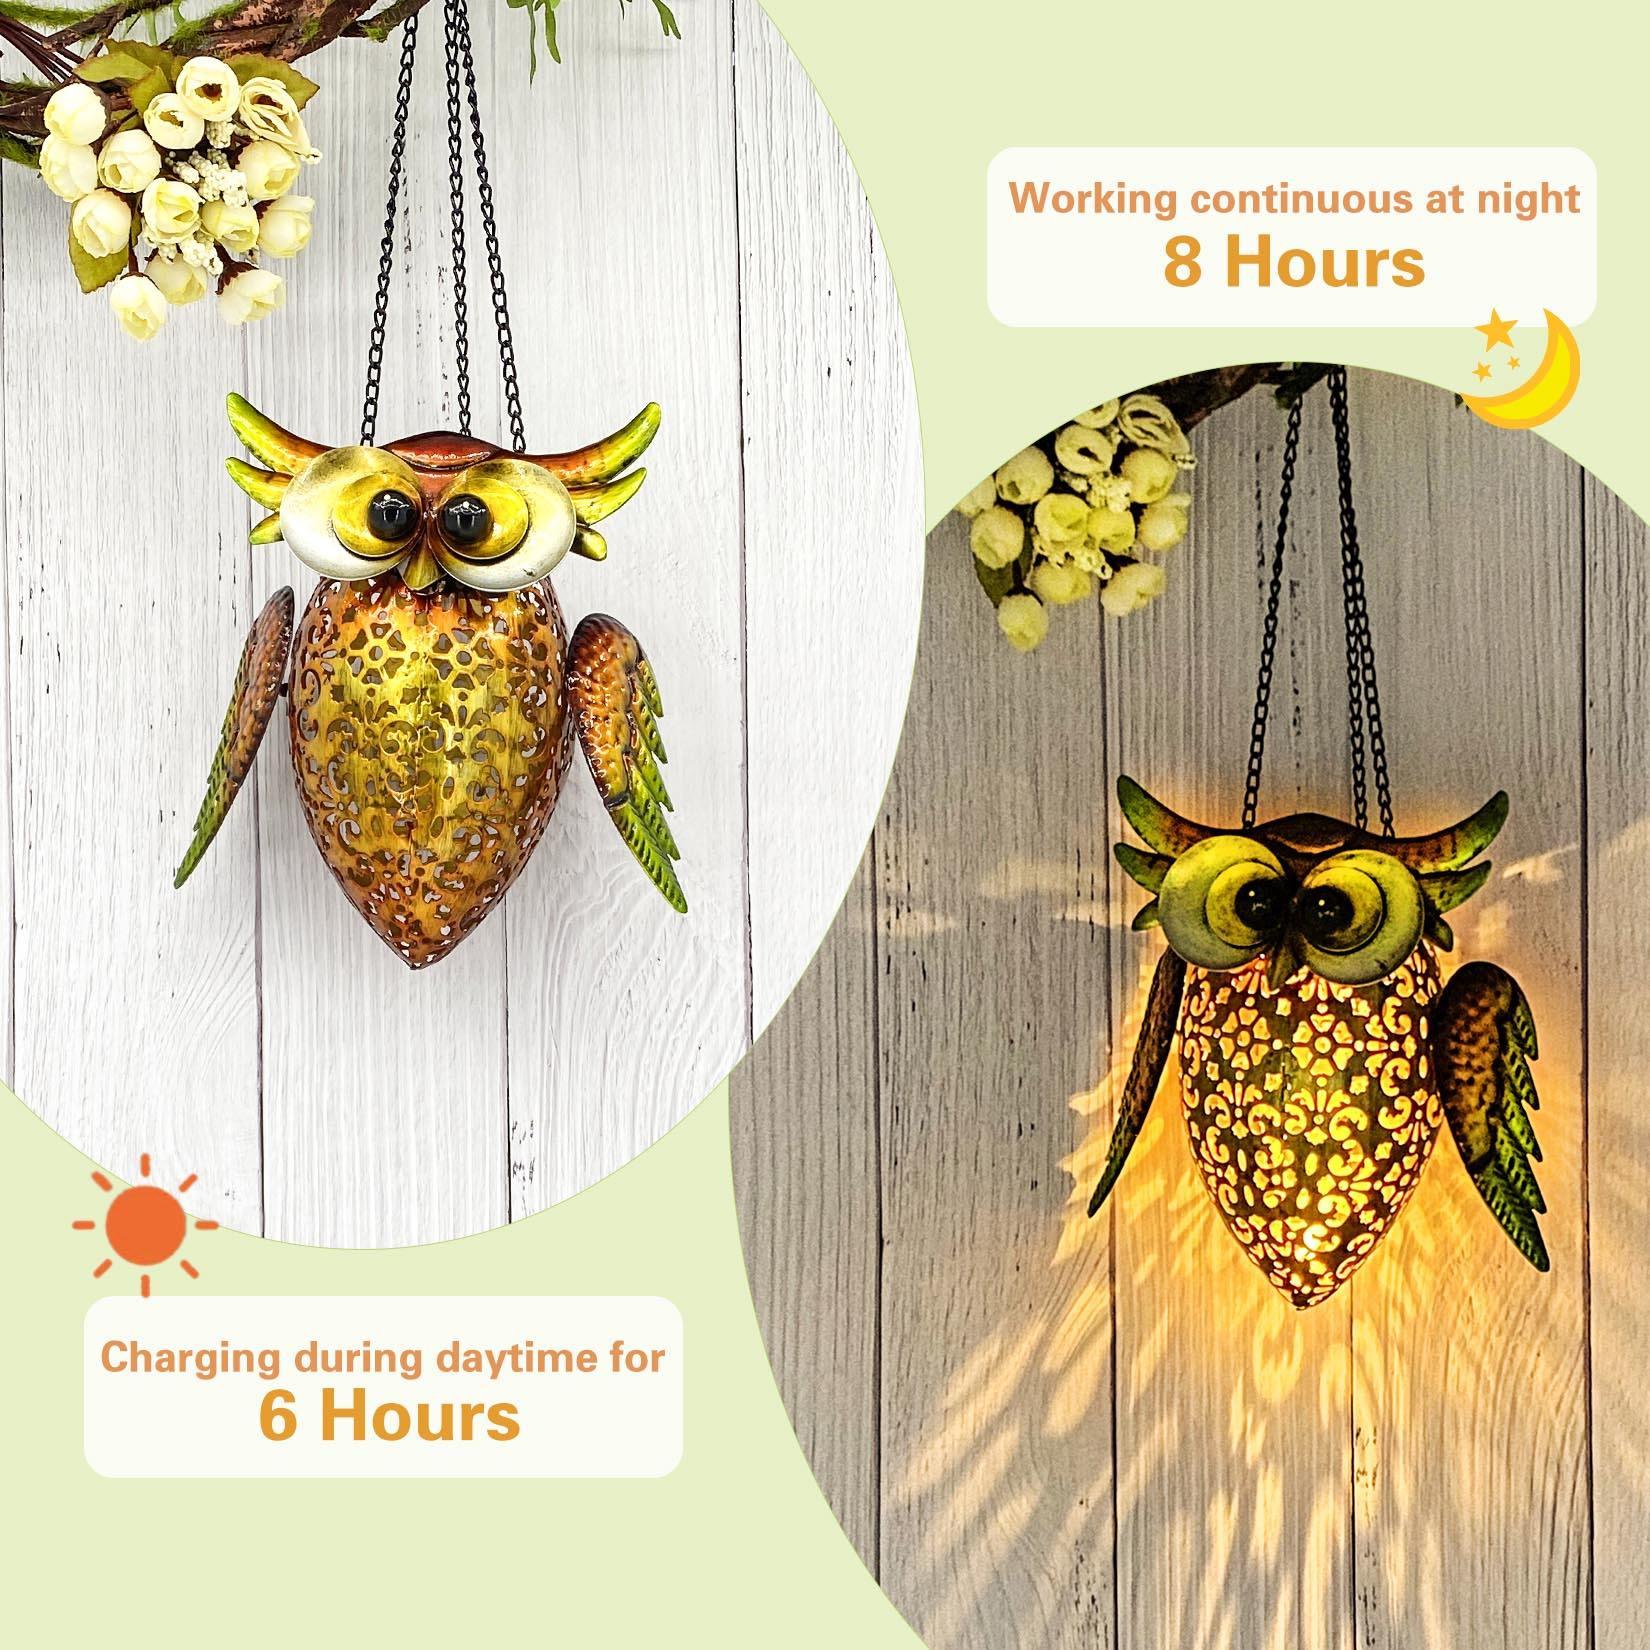 Hanging LED Solar Lantern Lights-Owl - If you say i do